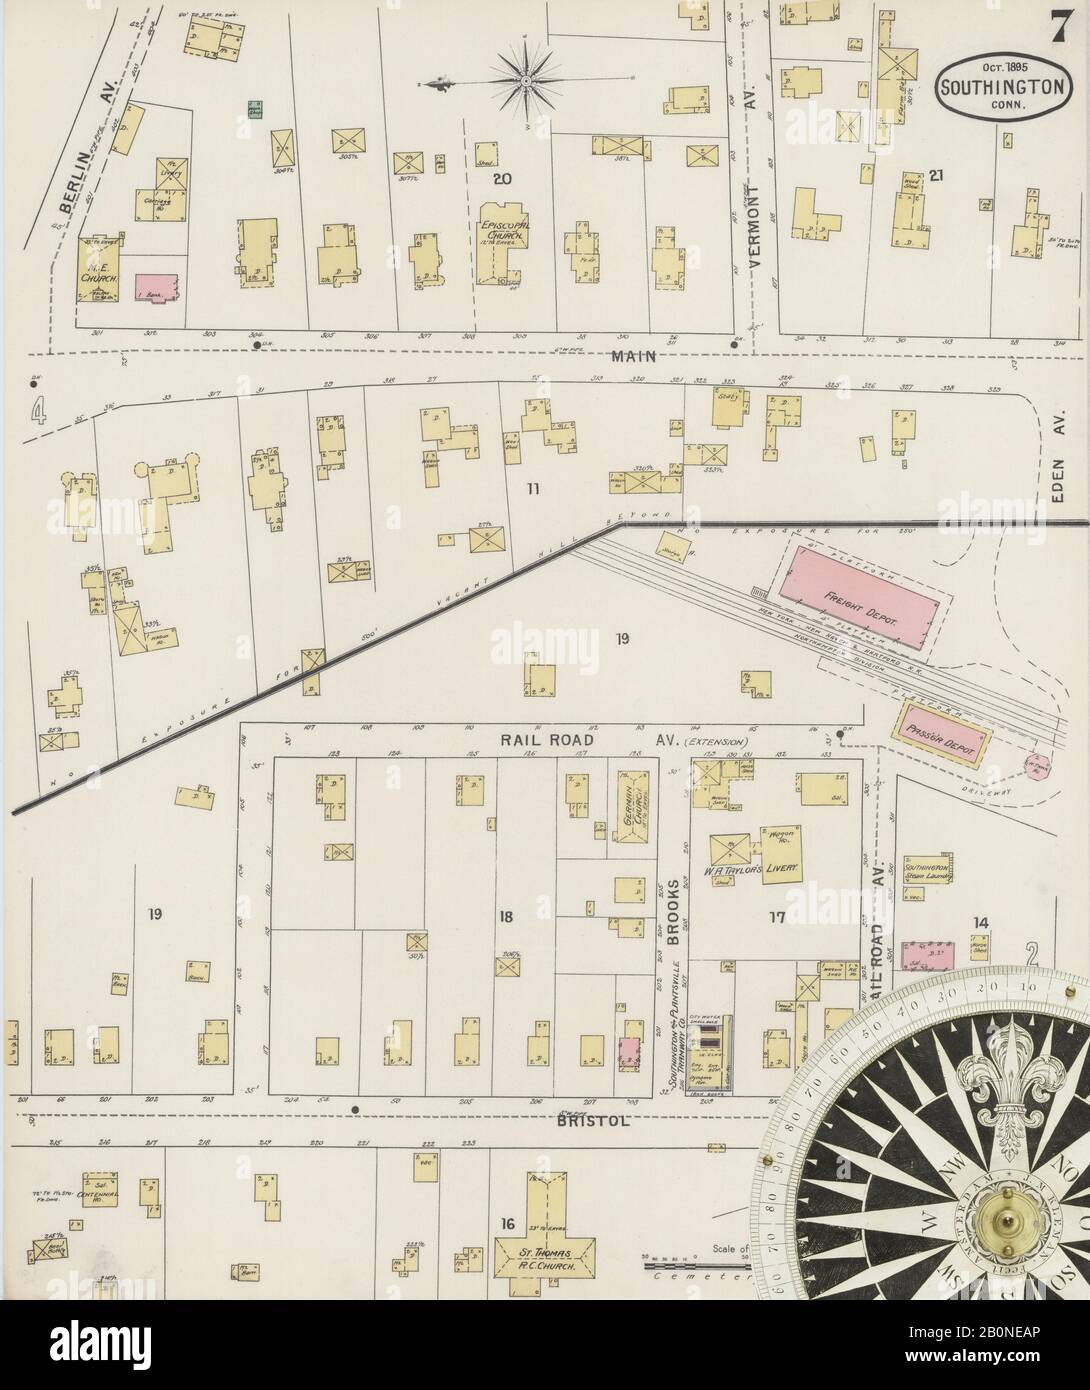 Image 7 De La Carte D'Assurance-Incendie Sanborn De Southington, Comté De Hartford, Connecticut. Oct 1895. 9 feuille(s), Amérique, plan de rue avec compas du XIXe siècle Banque D'Images